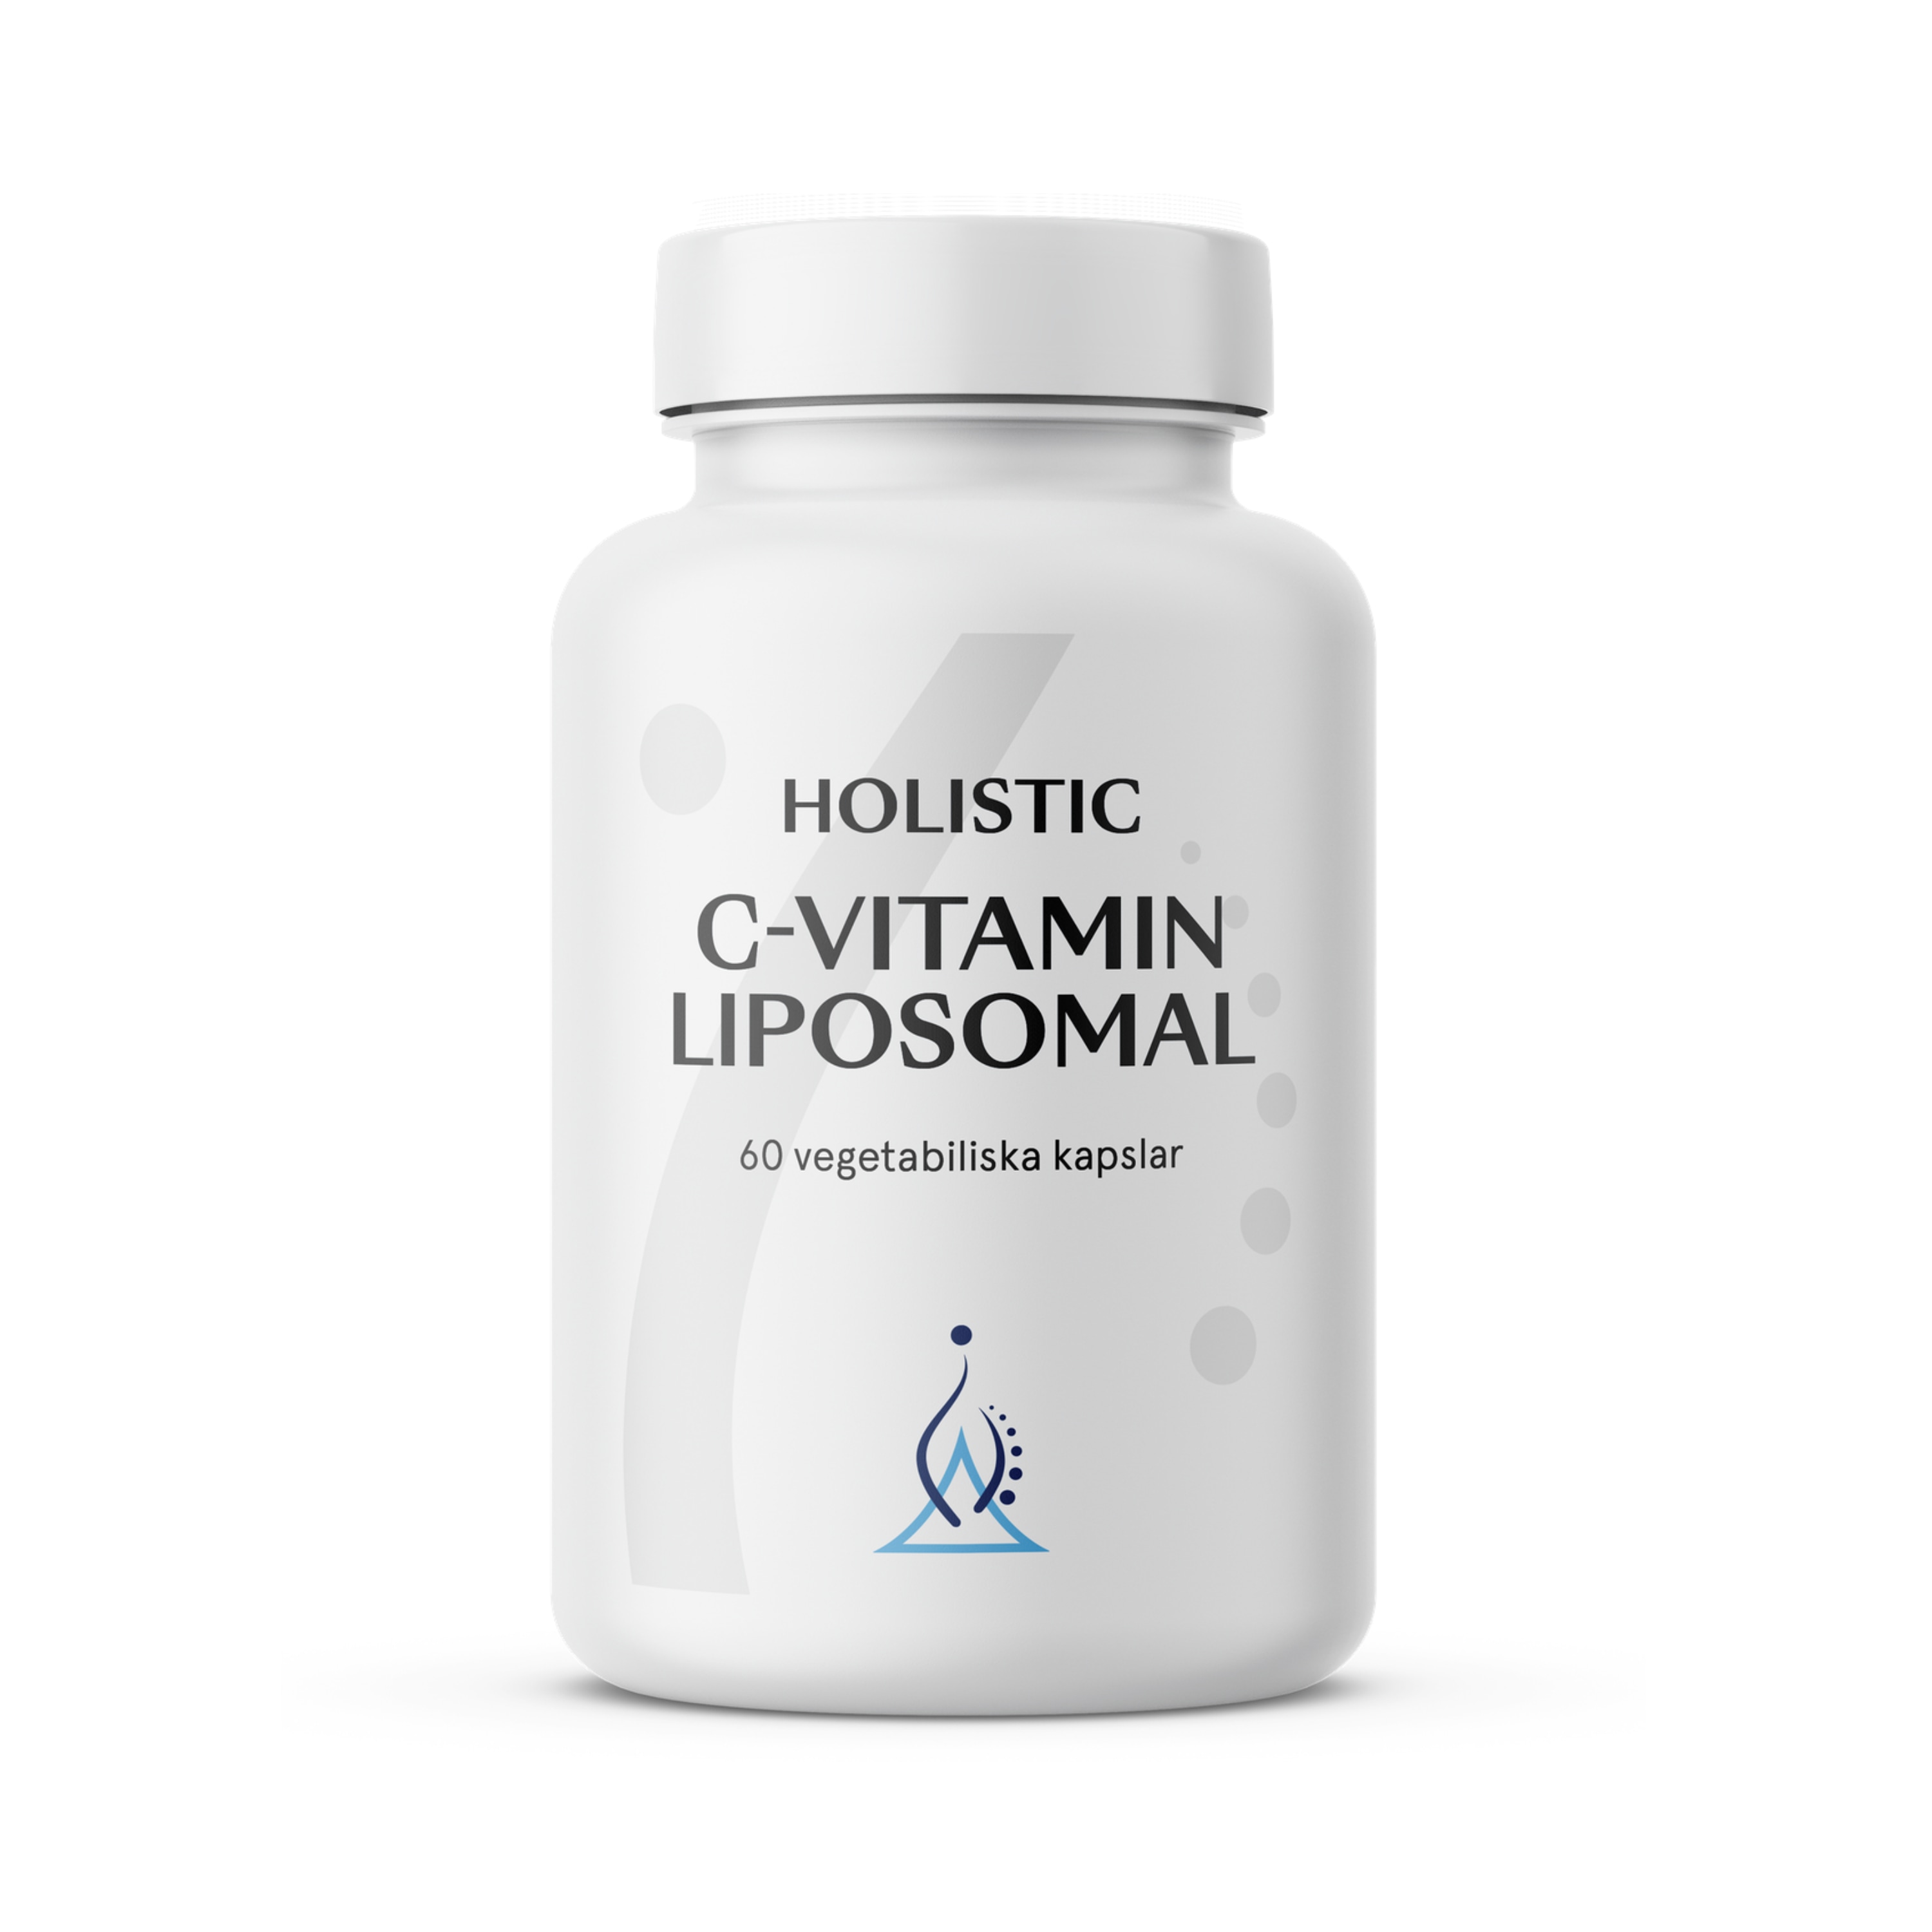 C-vitamin liposomal 60k